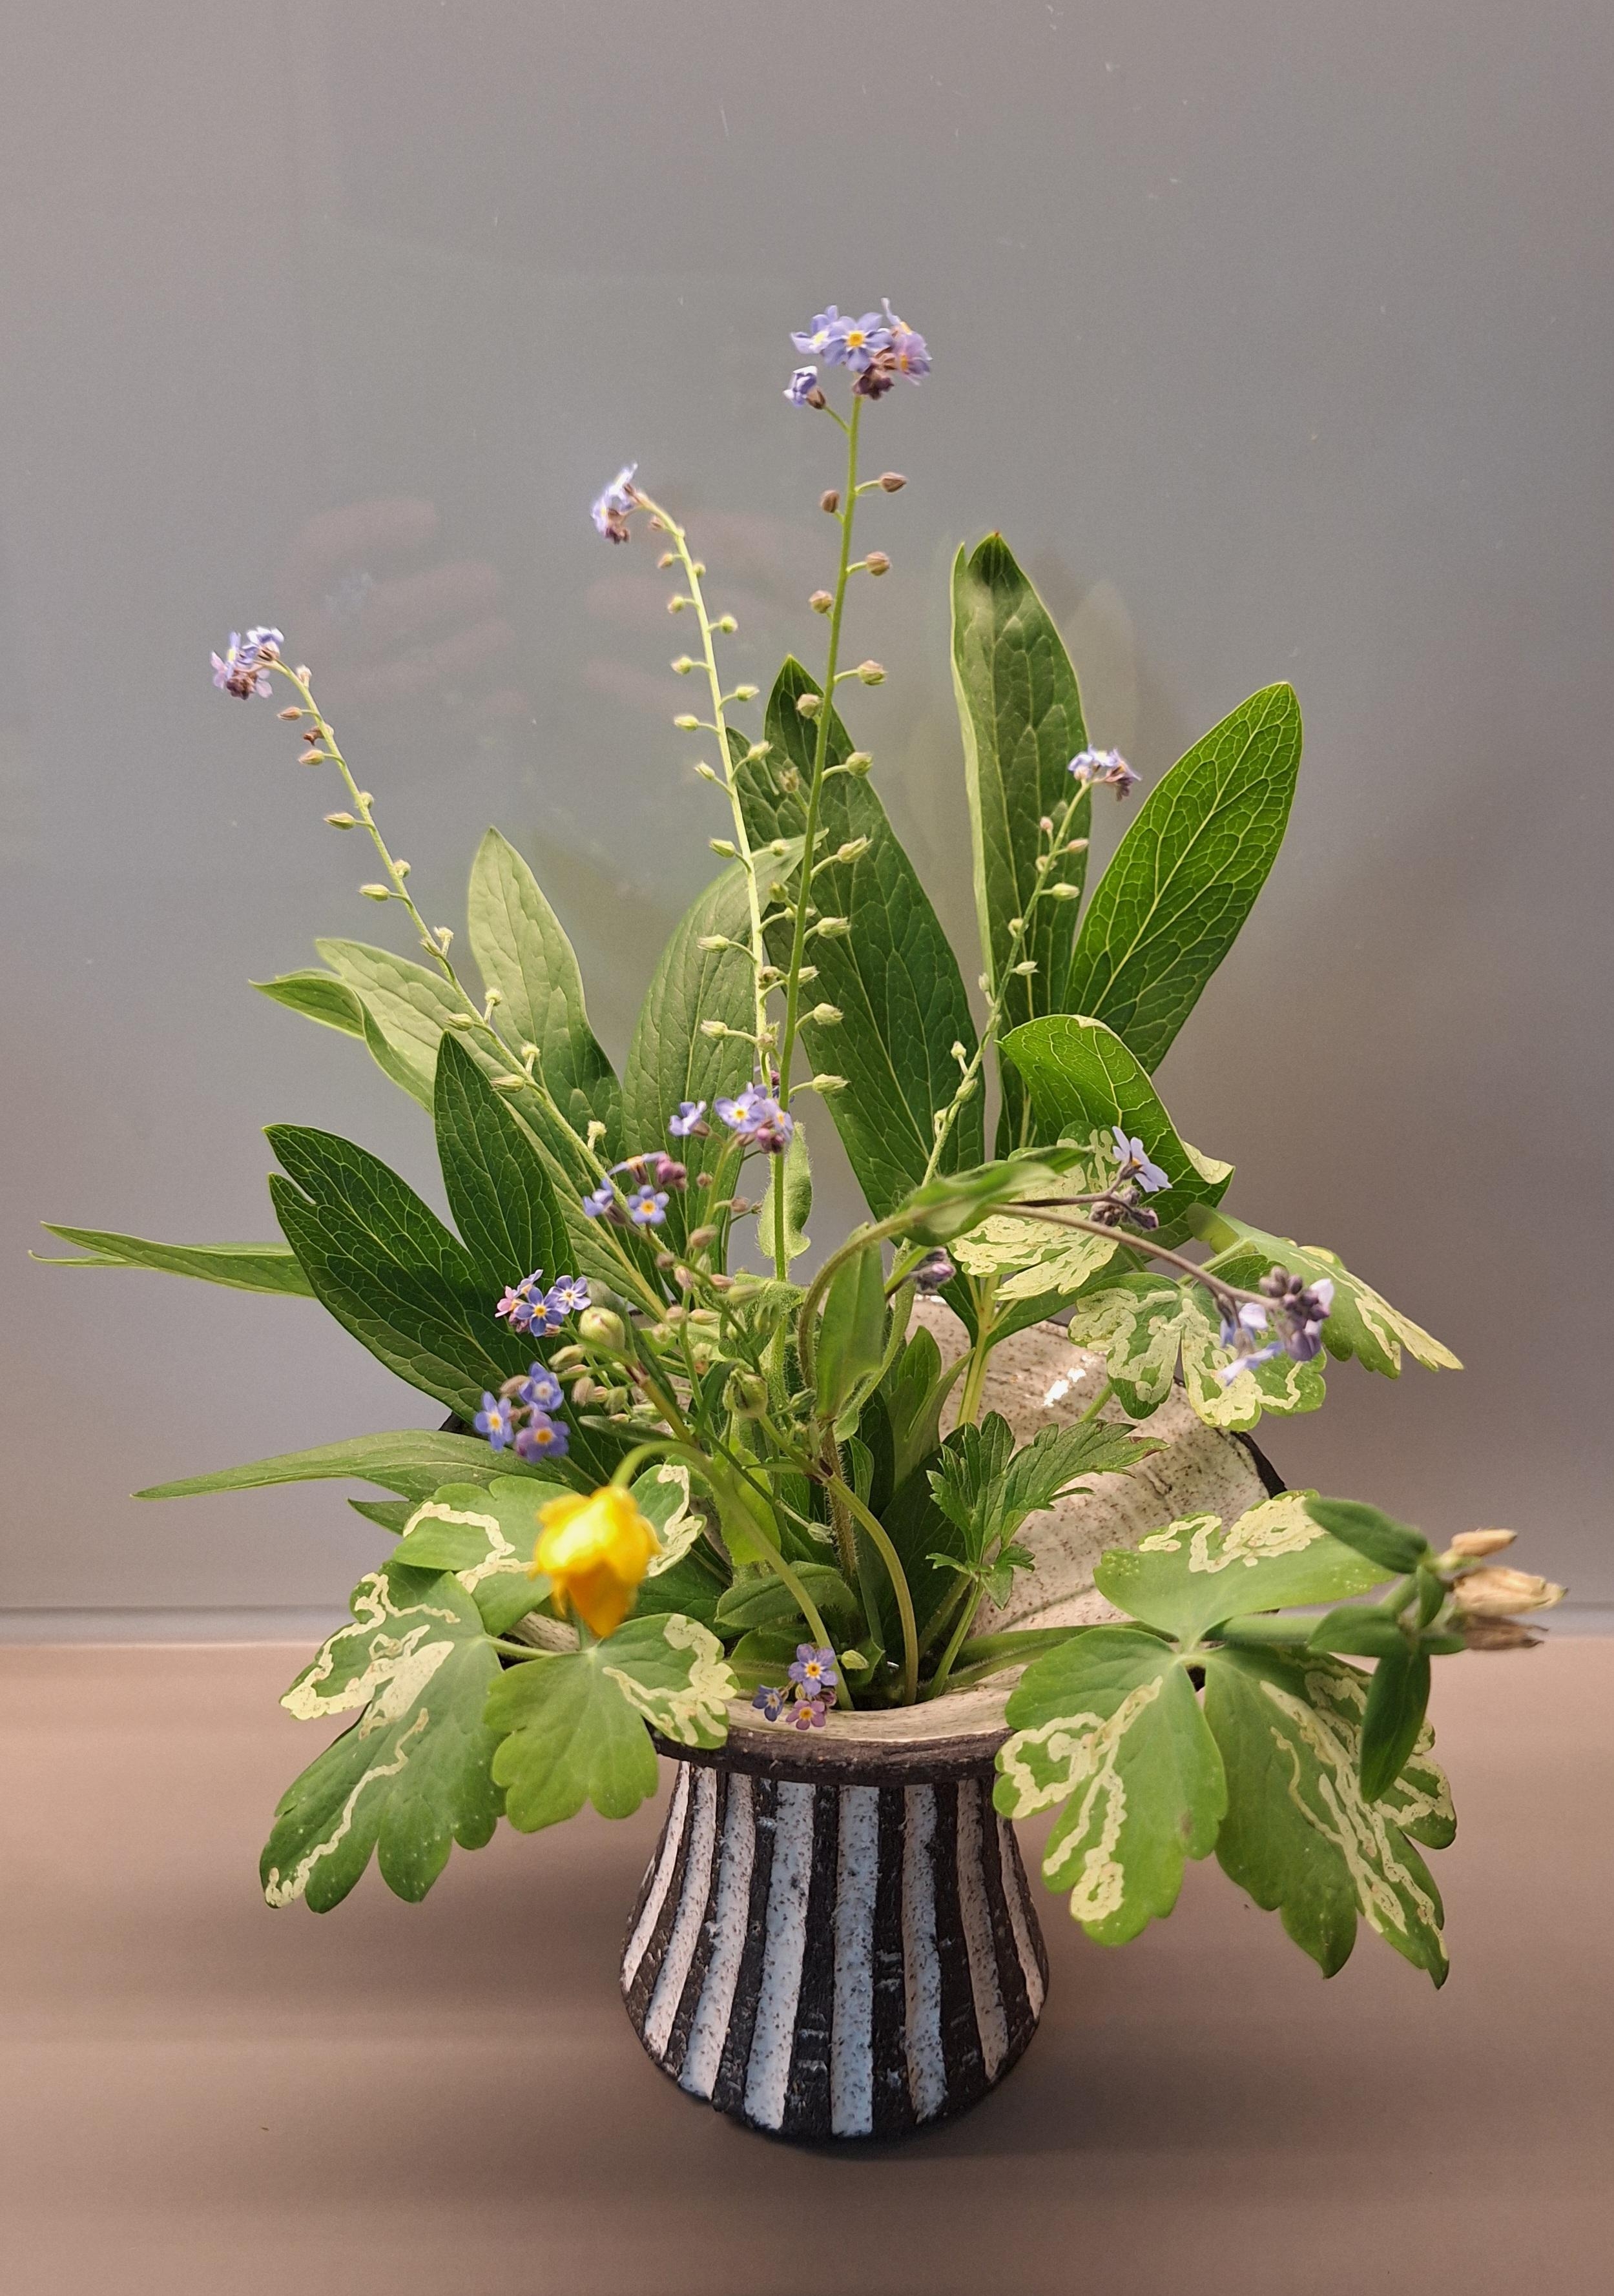 Mini-Bouquet
#Blumenstrauß #KleineBlumen #Retro #Vase #Spiegelung #freshflowerday